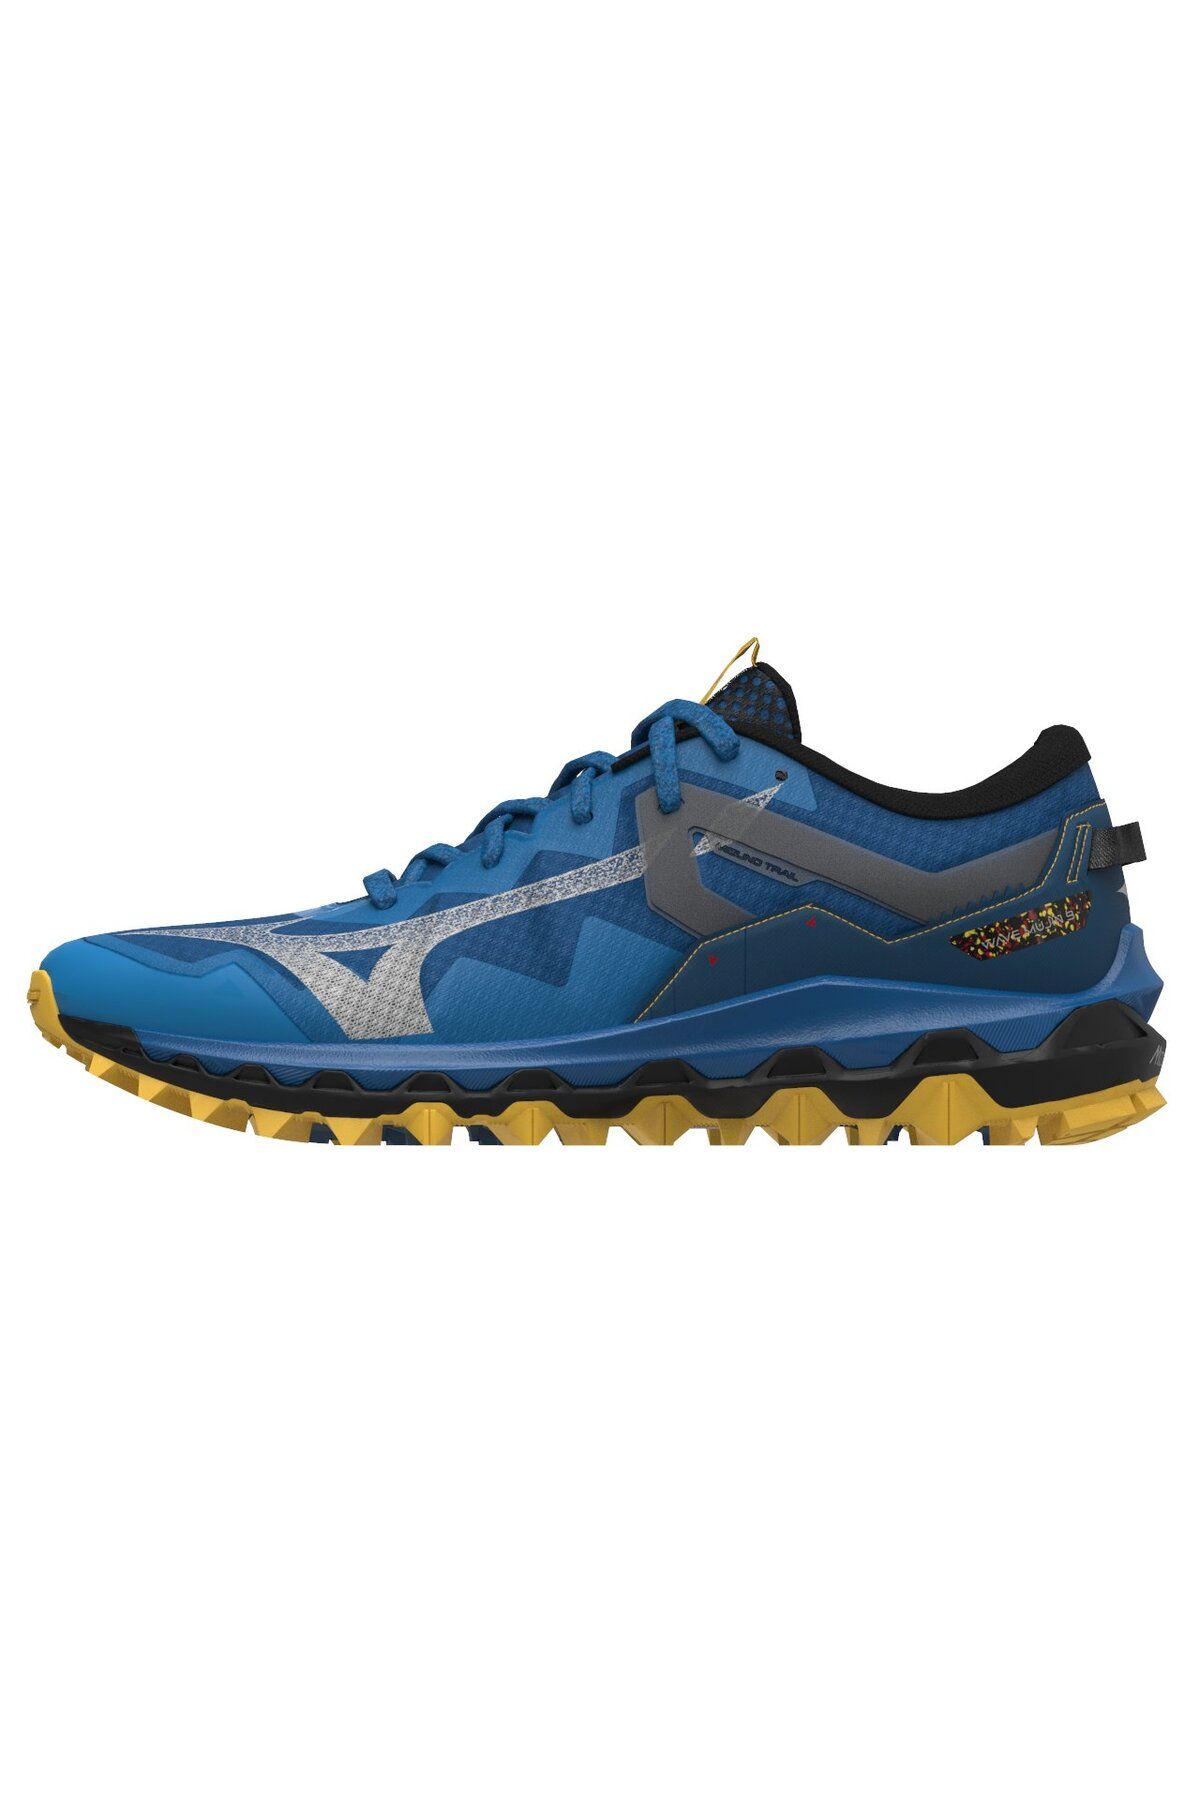 Mizuno Wave Mujin 9 Erkek Koşu Ayakkabısı Mavi